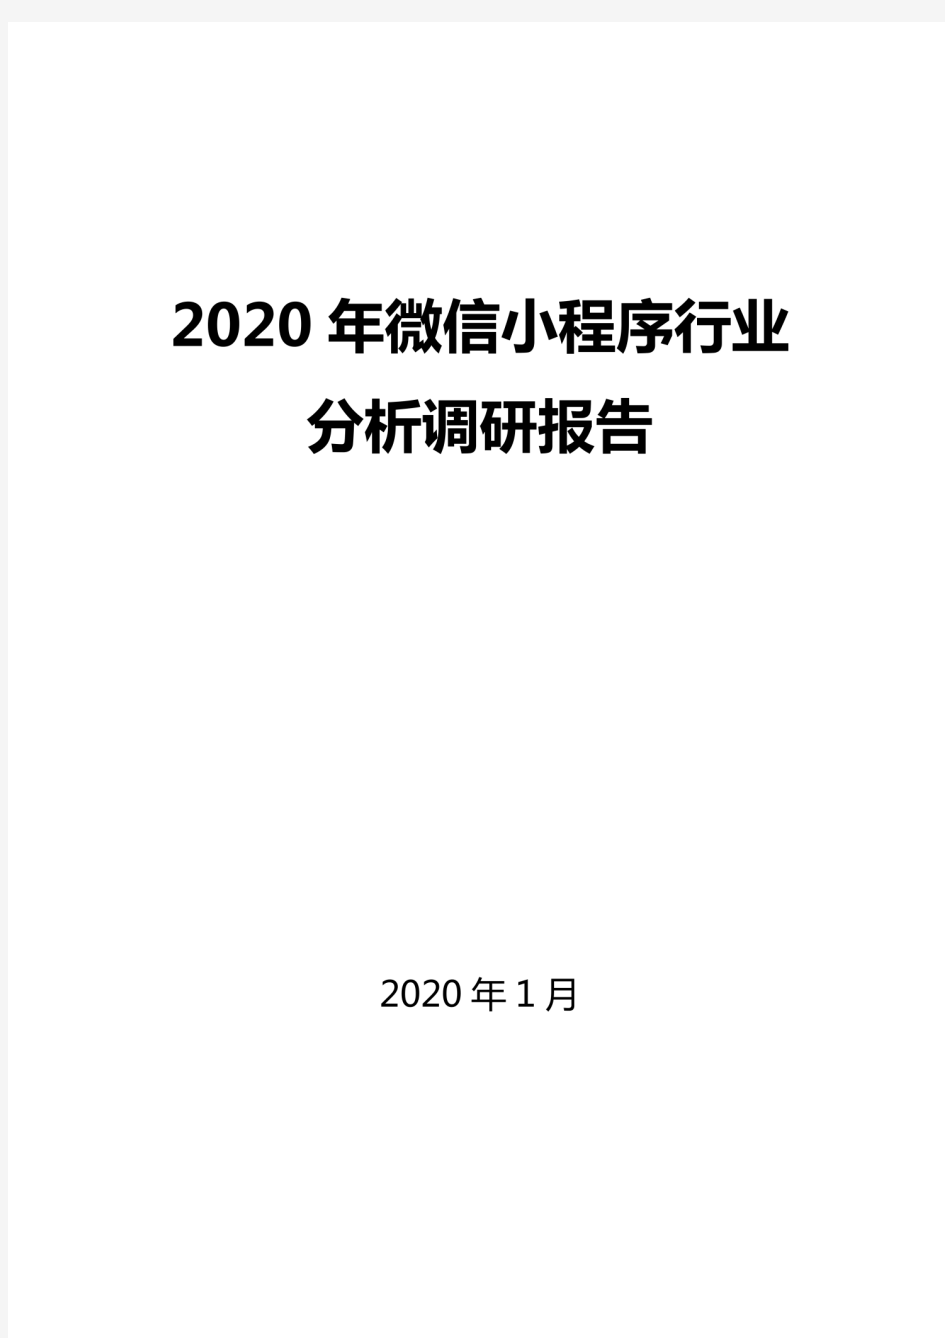 2020微信小程序行业分析调研报告